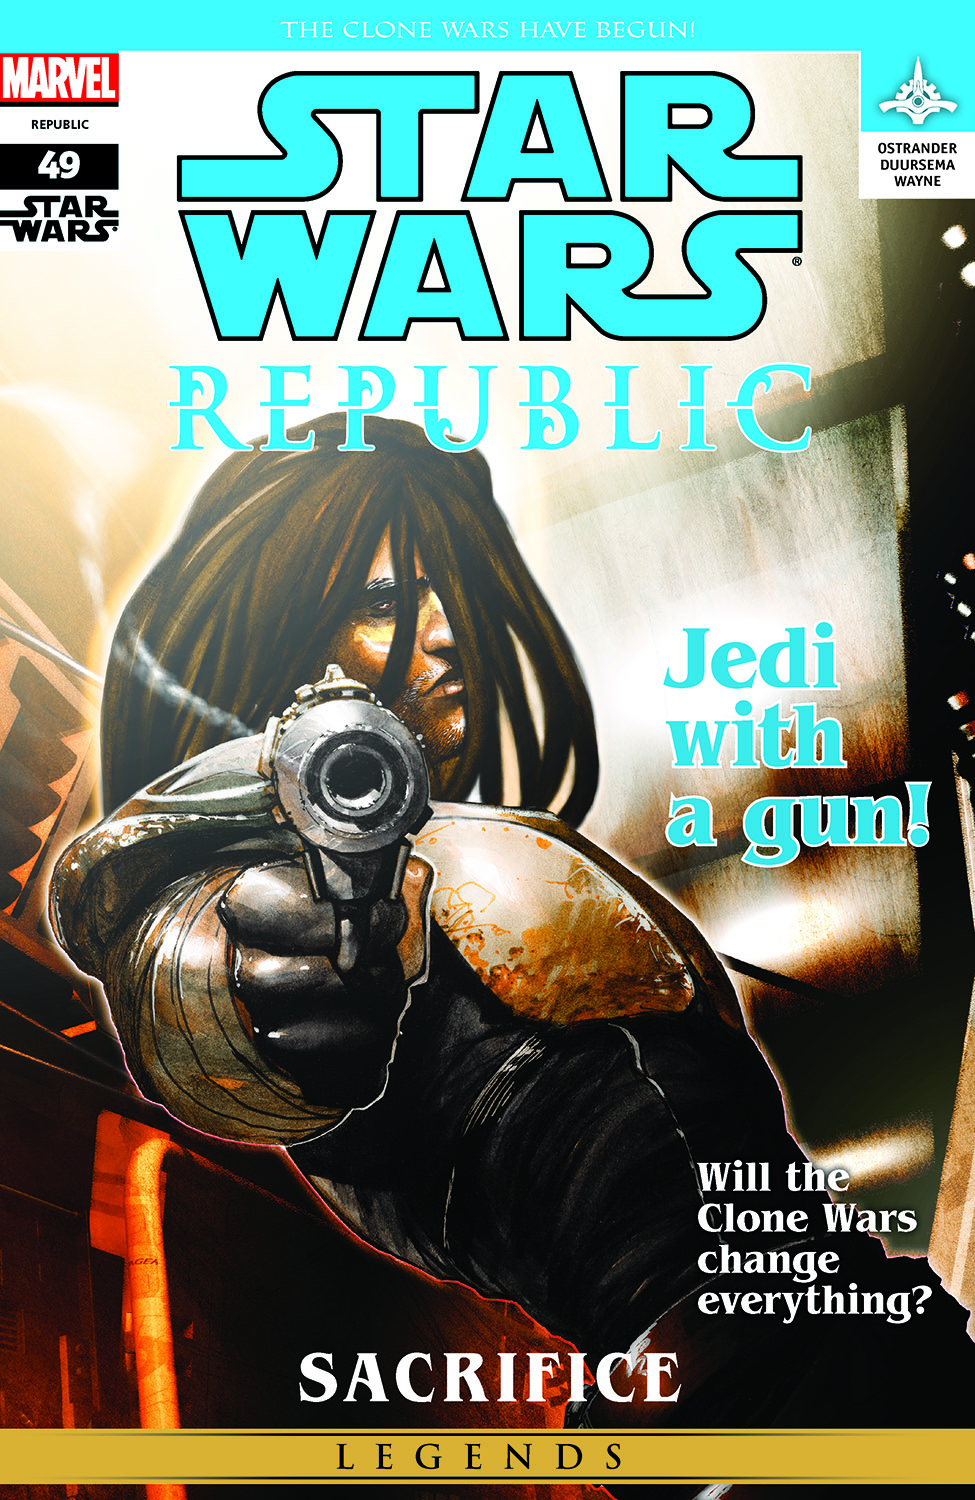 Star Wars: Republic (2002) #49